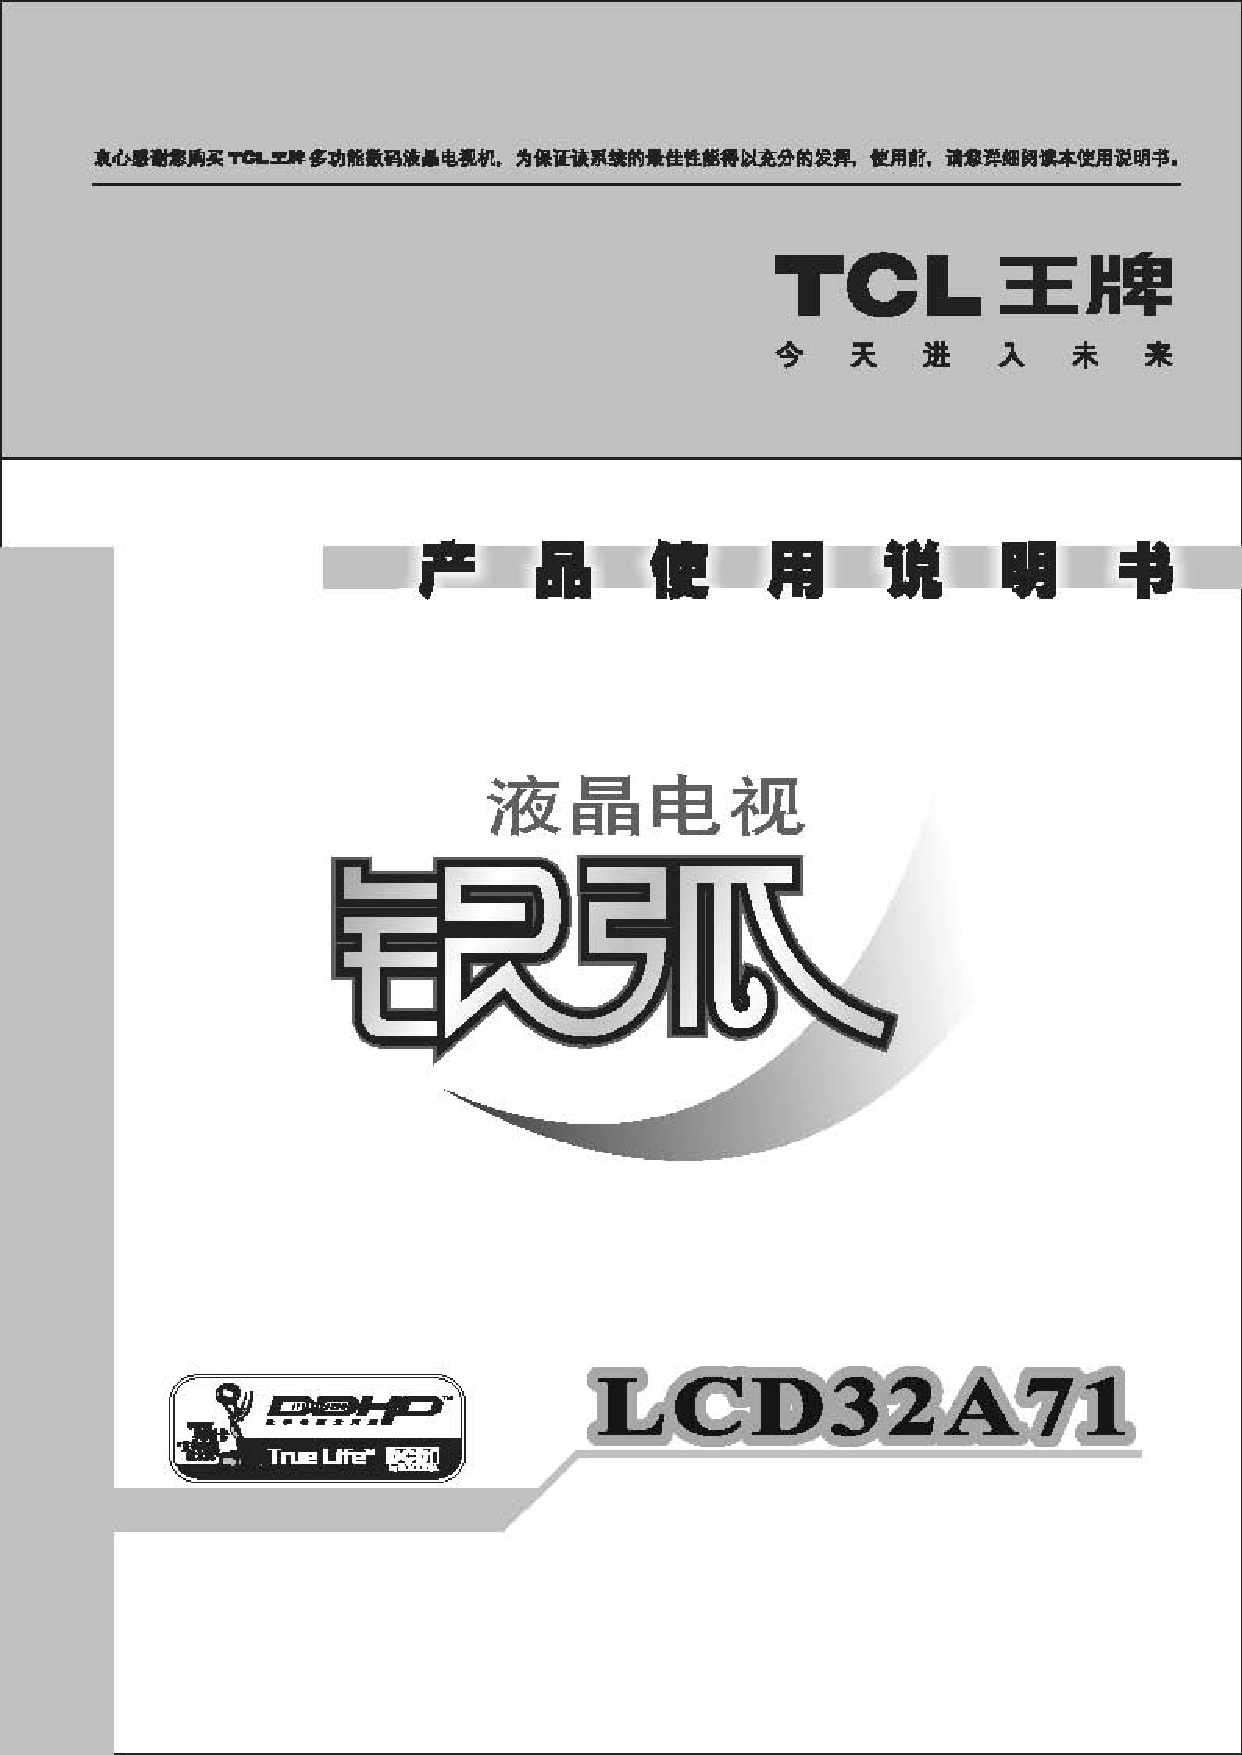 TCL LCD32A71 使用说明书 封面